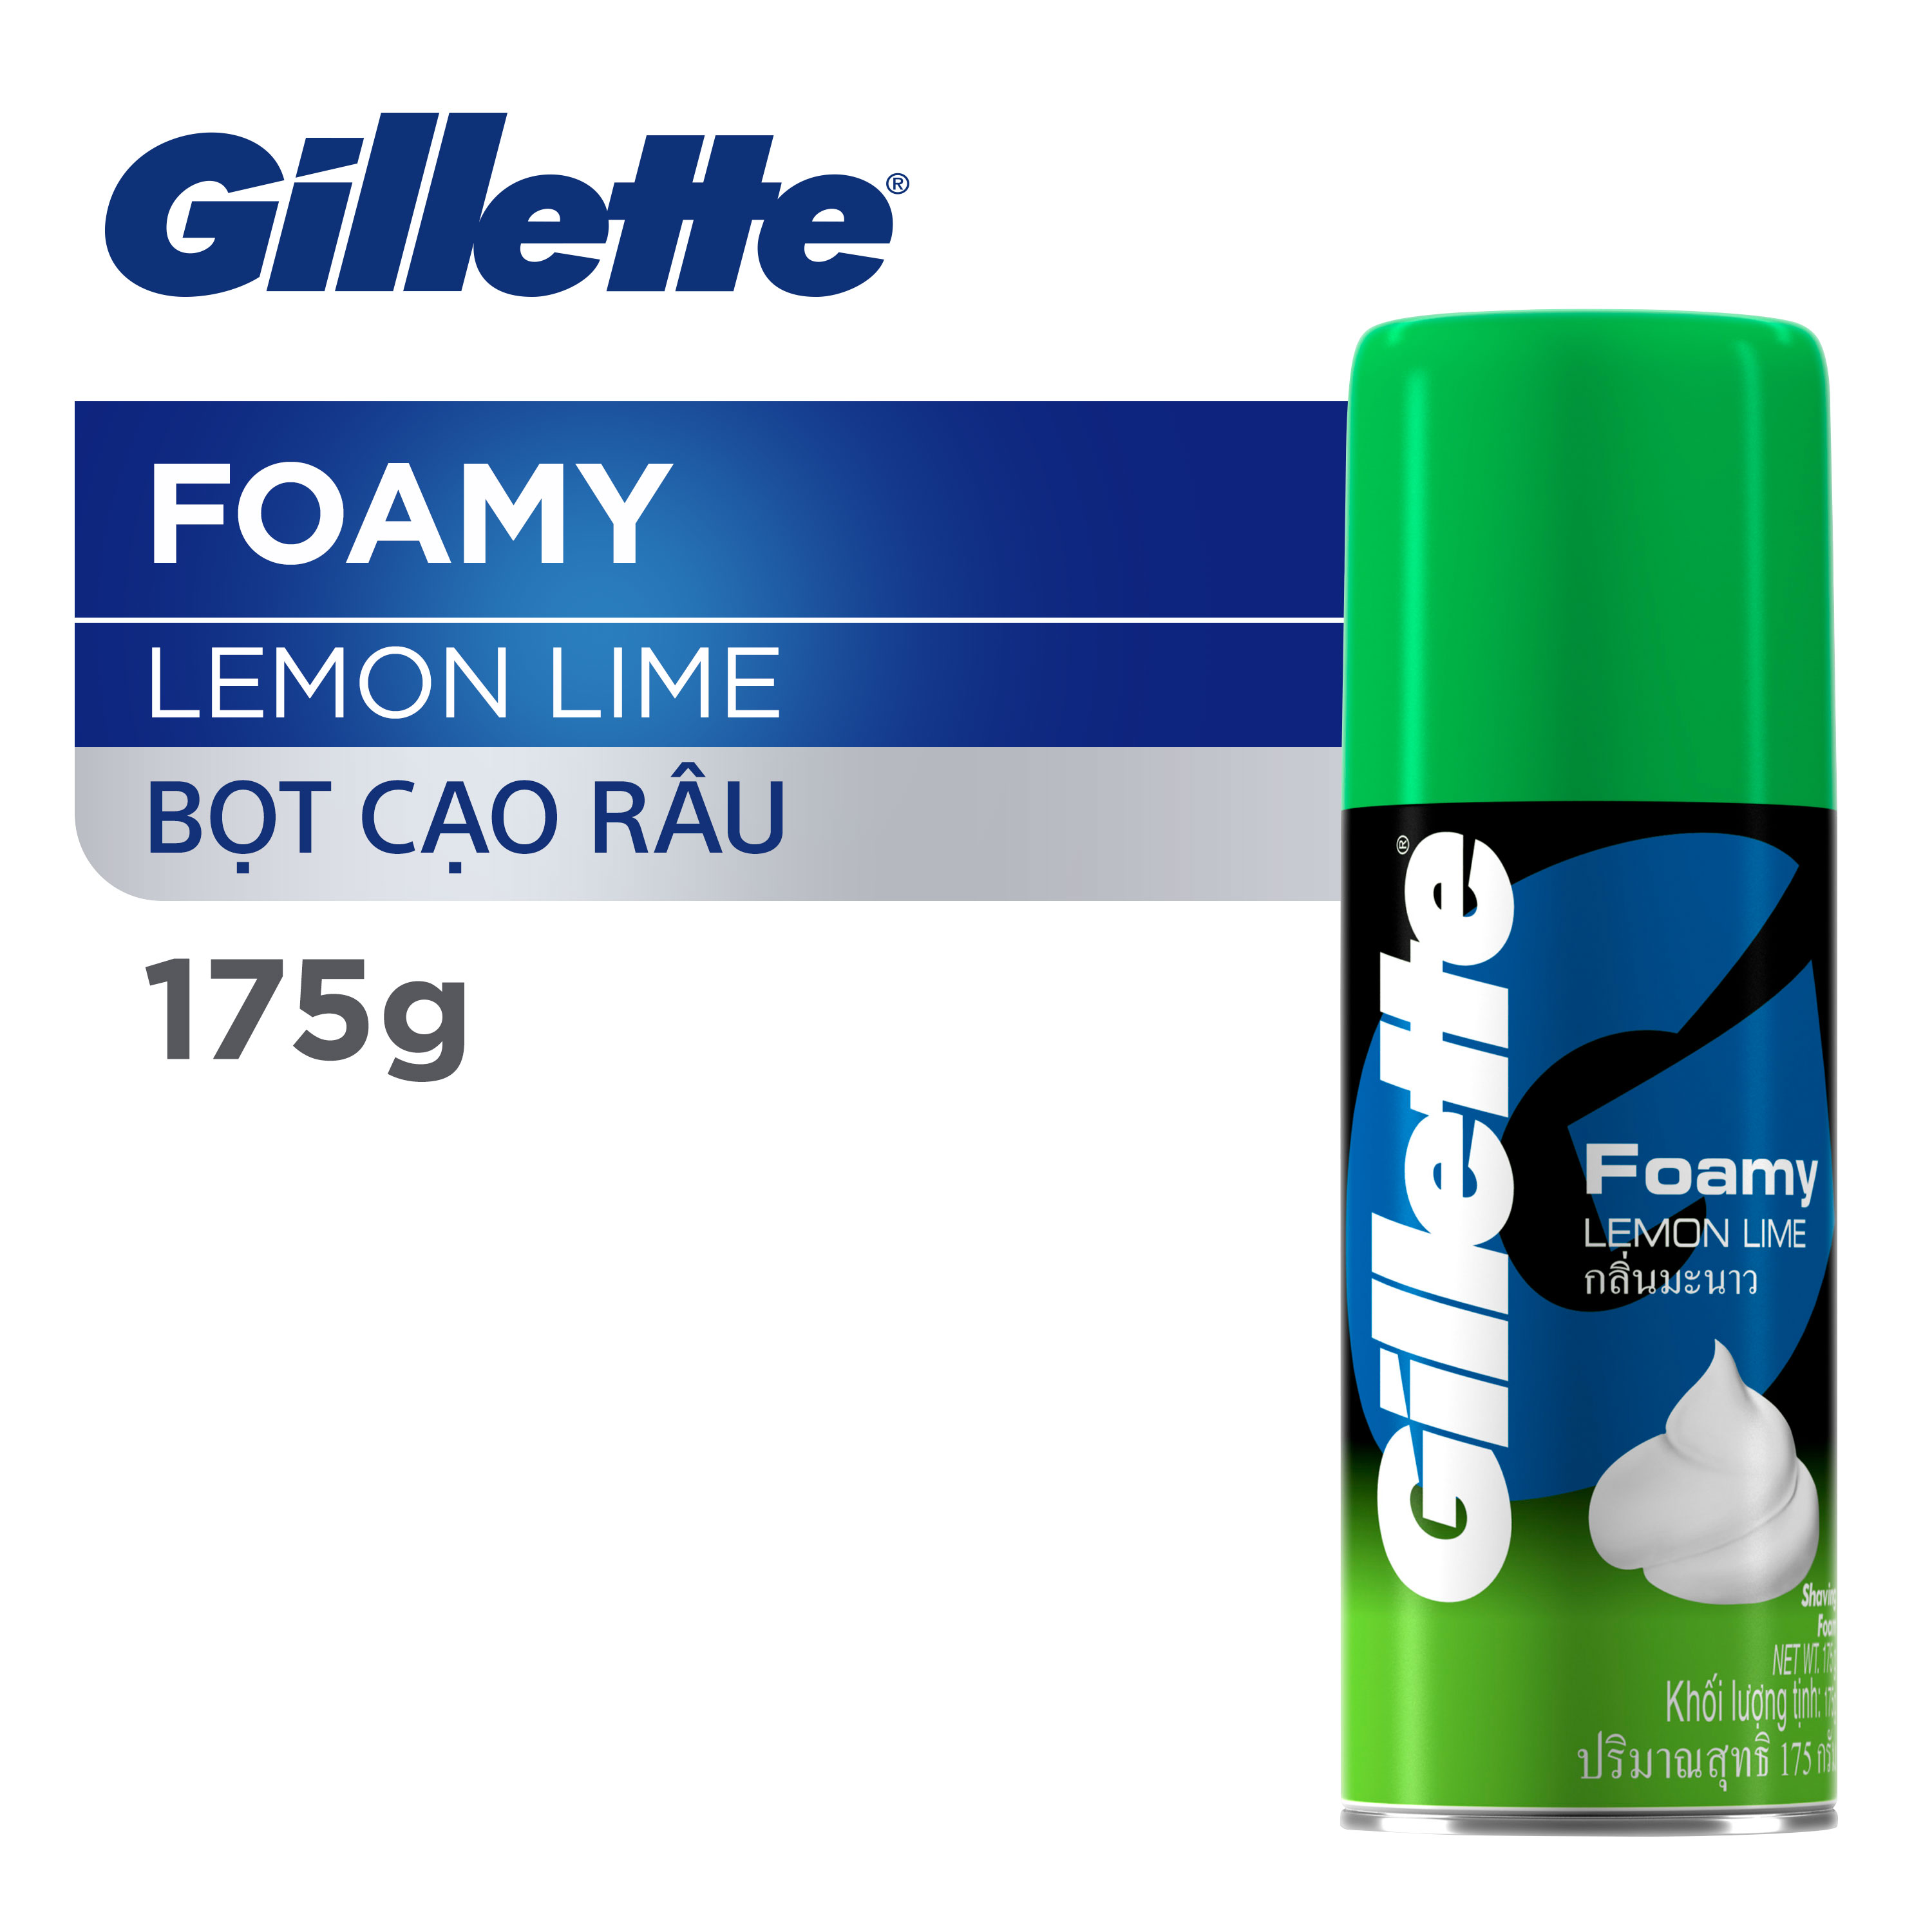 Bột cạo râu hương chanh Gillette Foamy Lemon Lime 175g